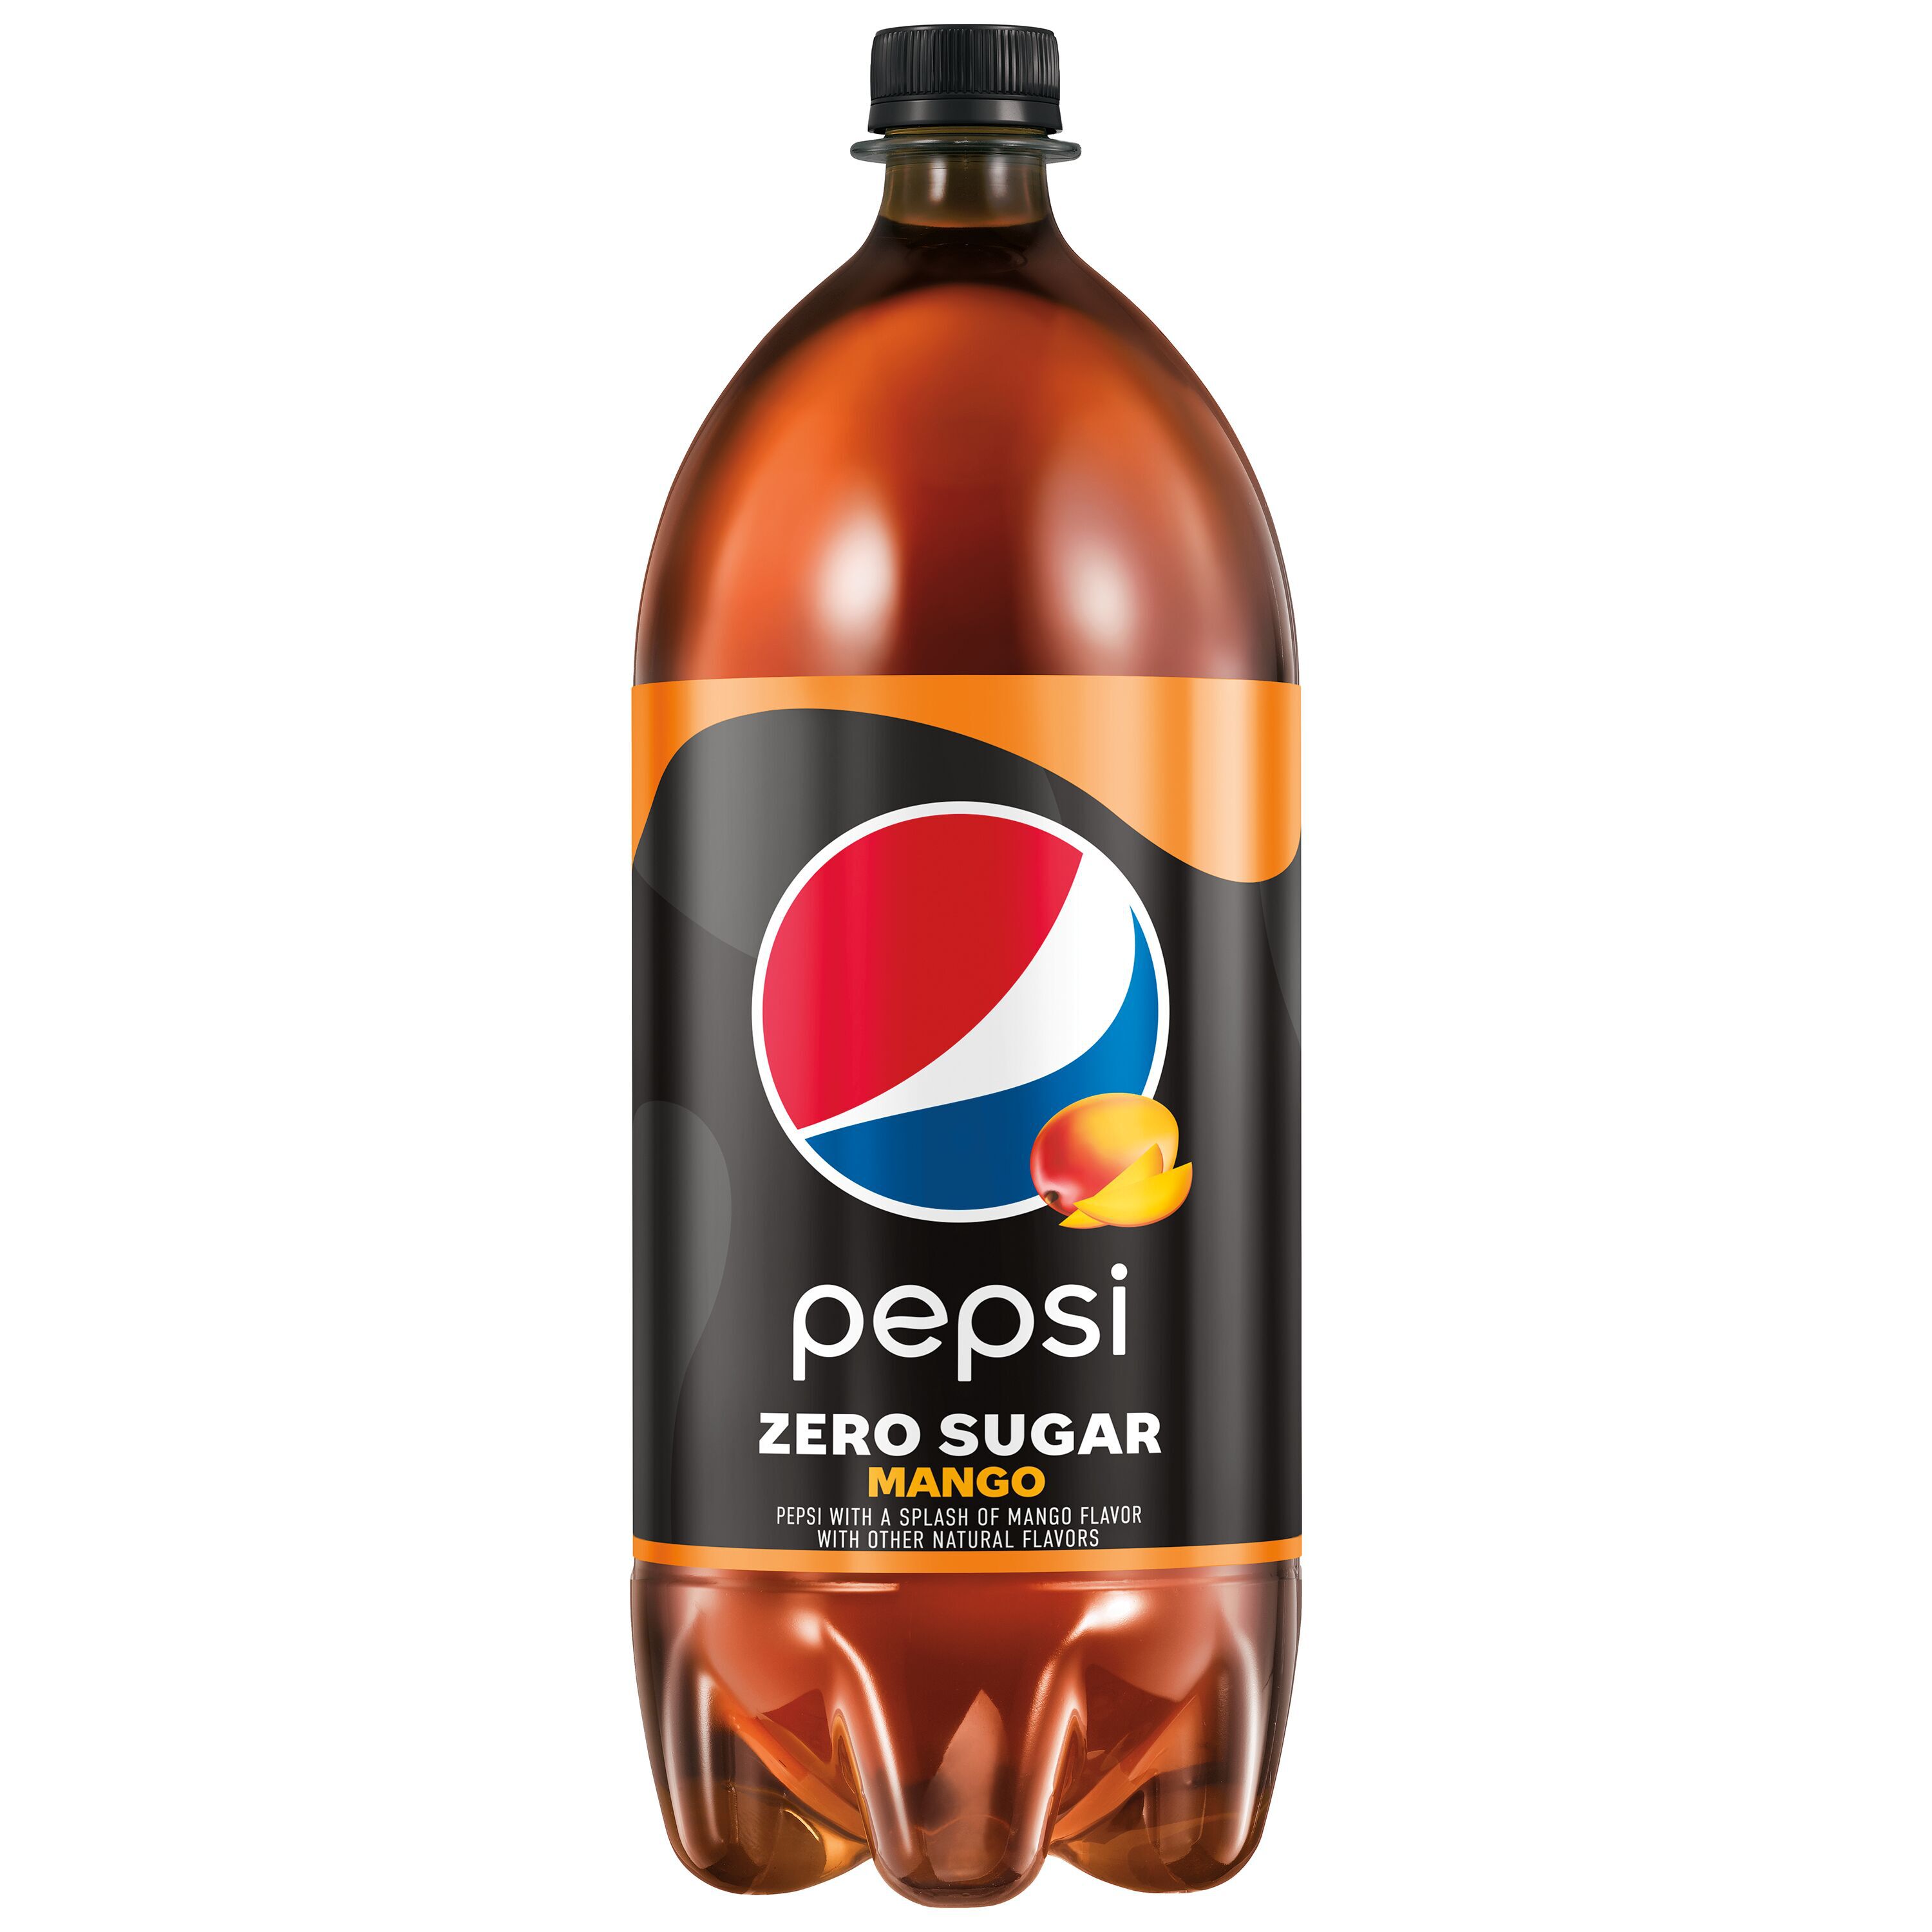 Pepsi, Zero Sugar, Mango Flavor - SmartLabel™